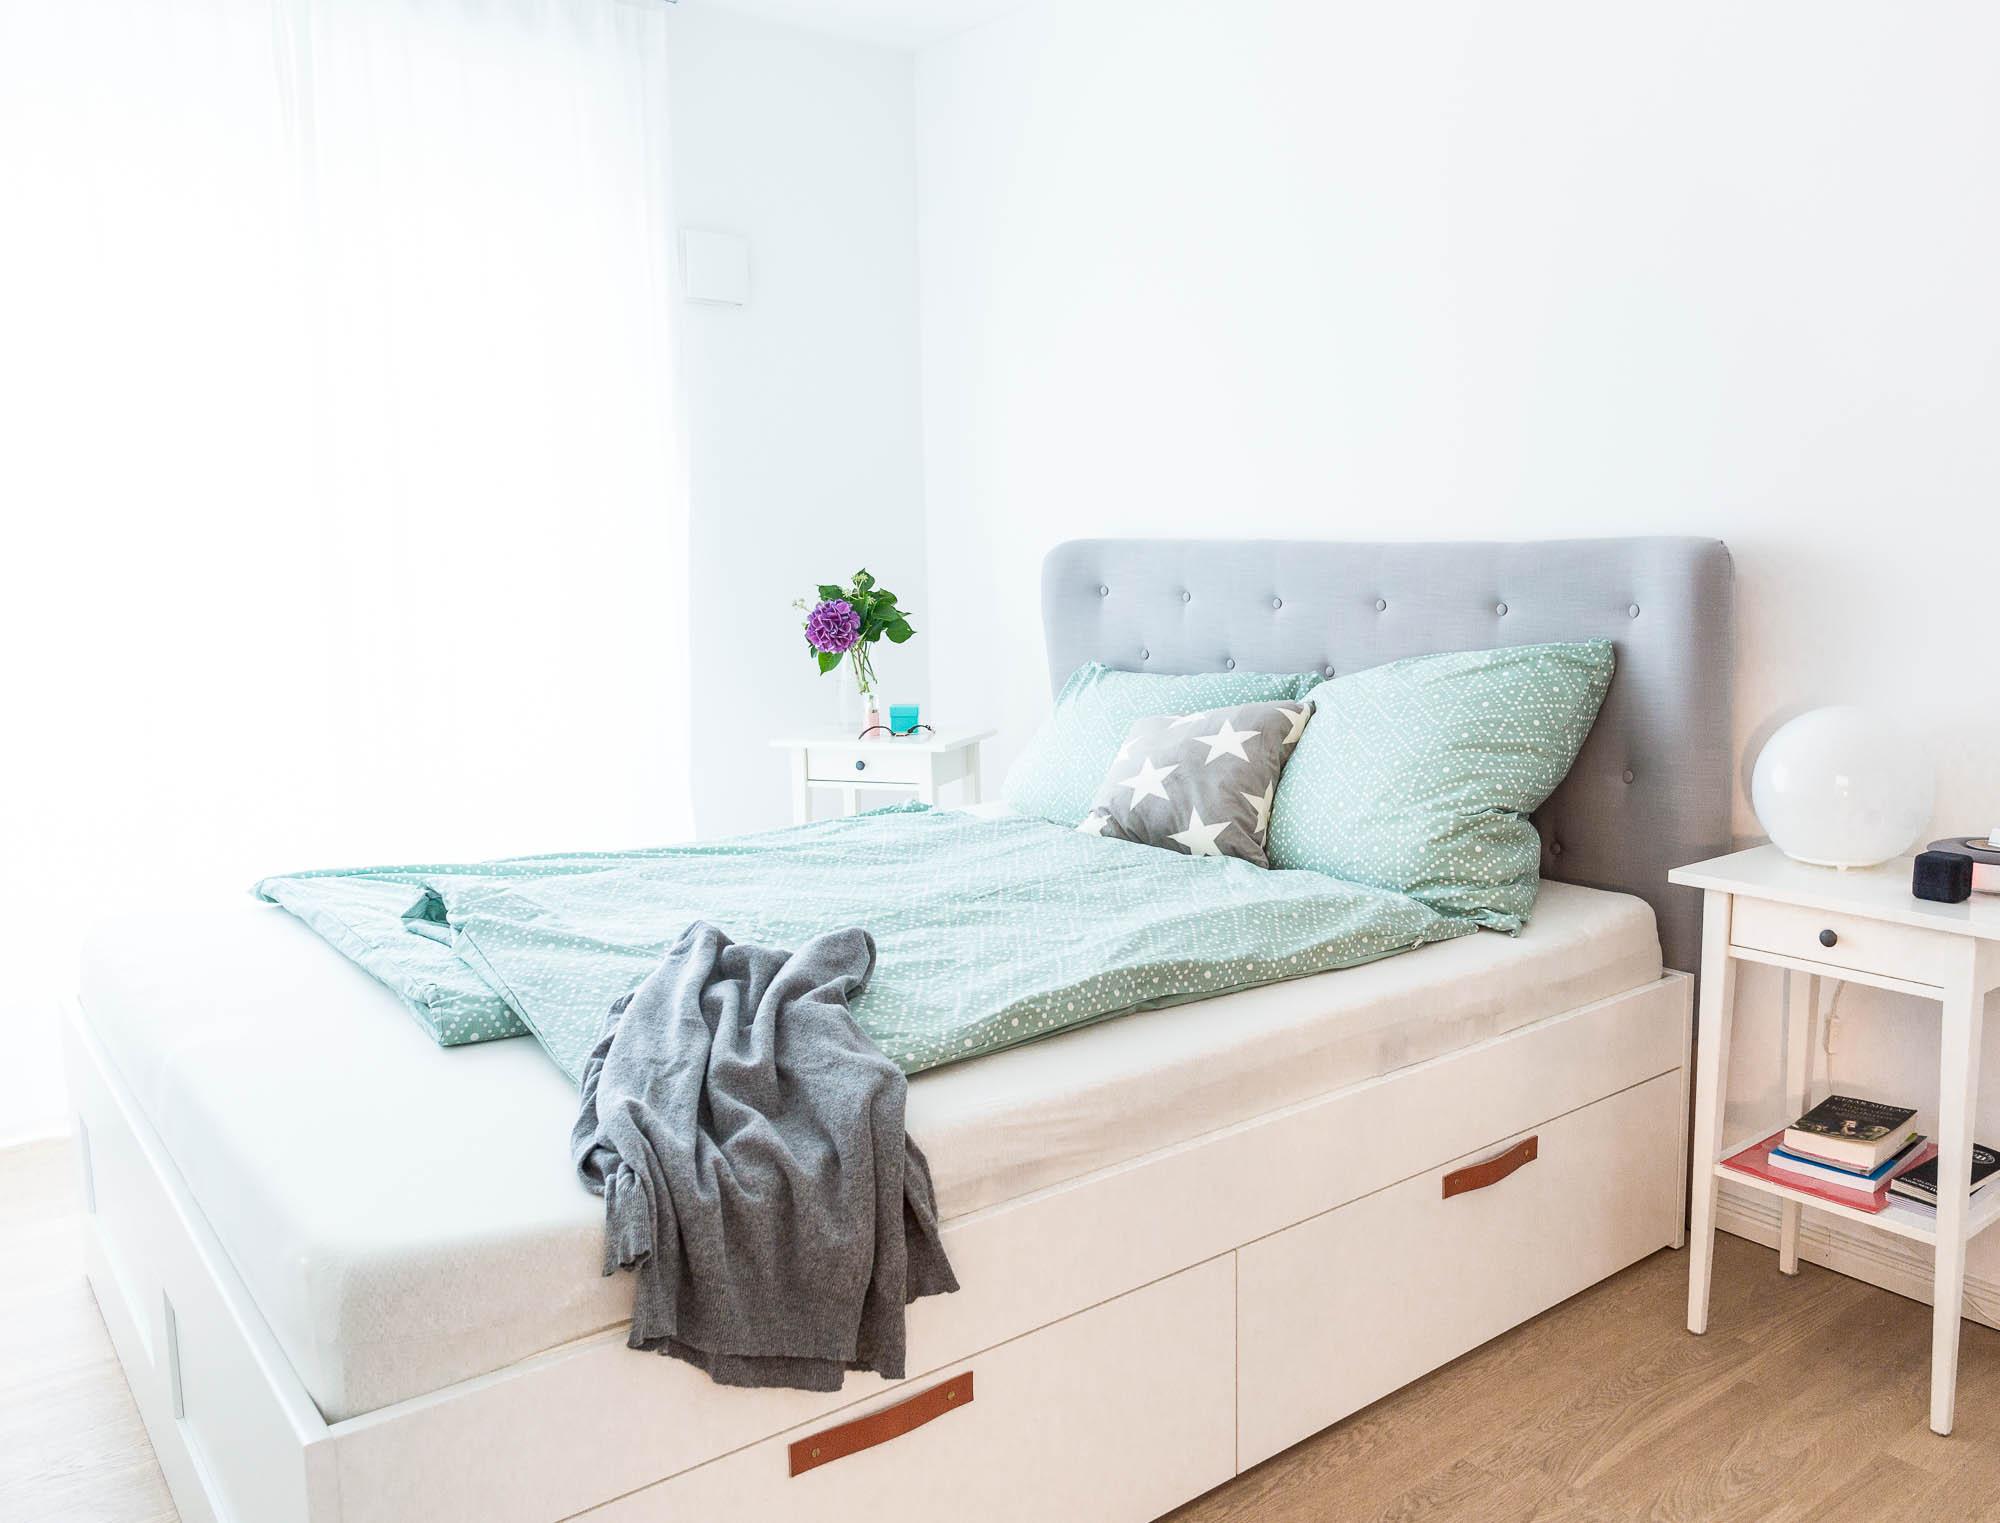 Es gibt doch nichts über ein gemütliches Bett #schlafzimmer #ikea #whiteliving #bettrückwand #modernesschlafzimmer